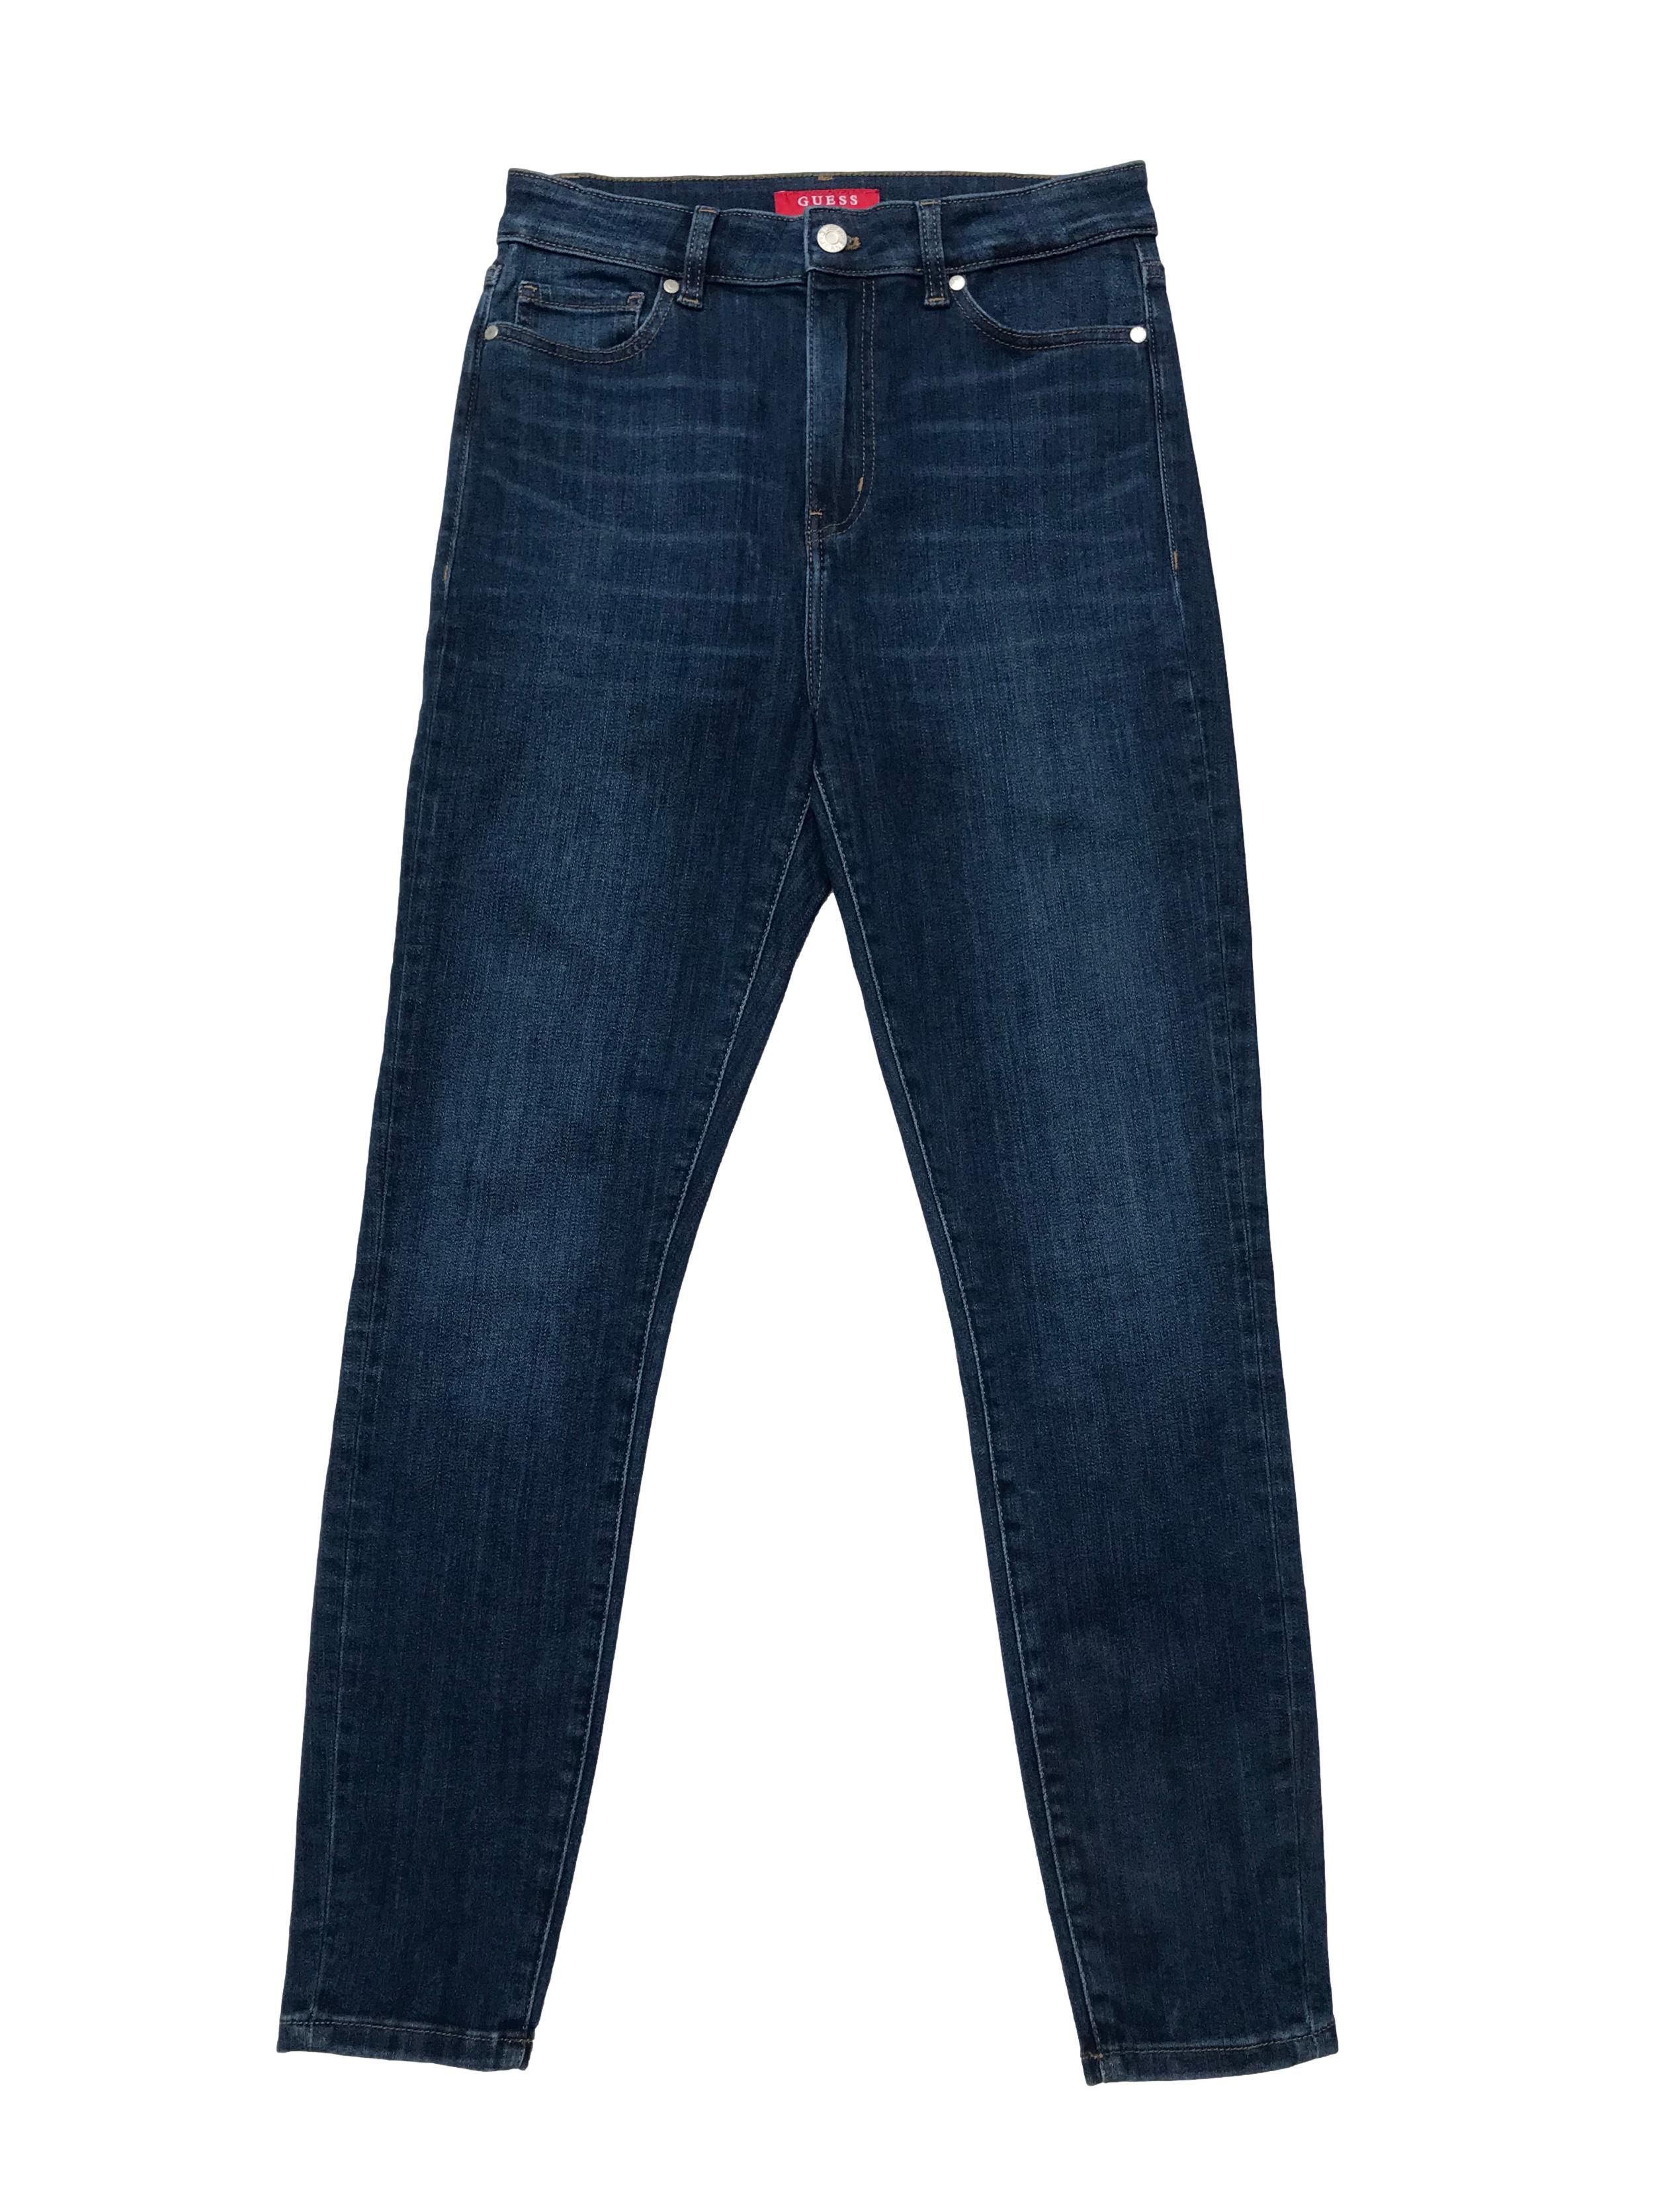 Skinny jean Guess corte cintura alta, stretch, con aplicacionesde strass en bolsillo trasero. Cintura 76cm sin estirar Largo 100cm. Precio original S/ 449